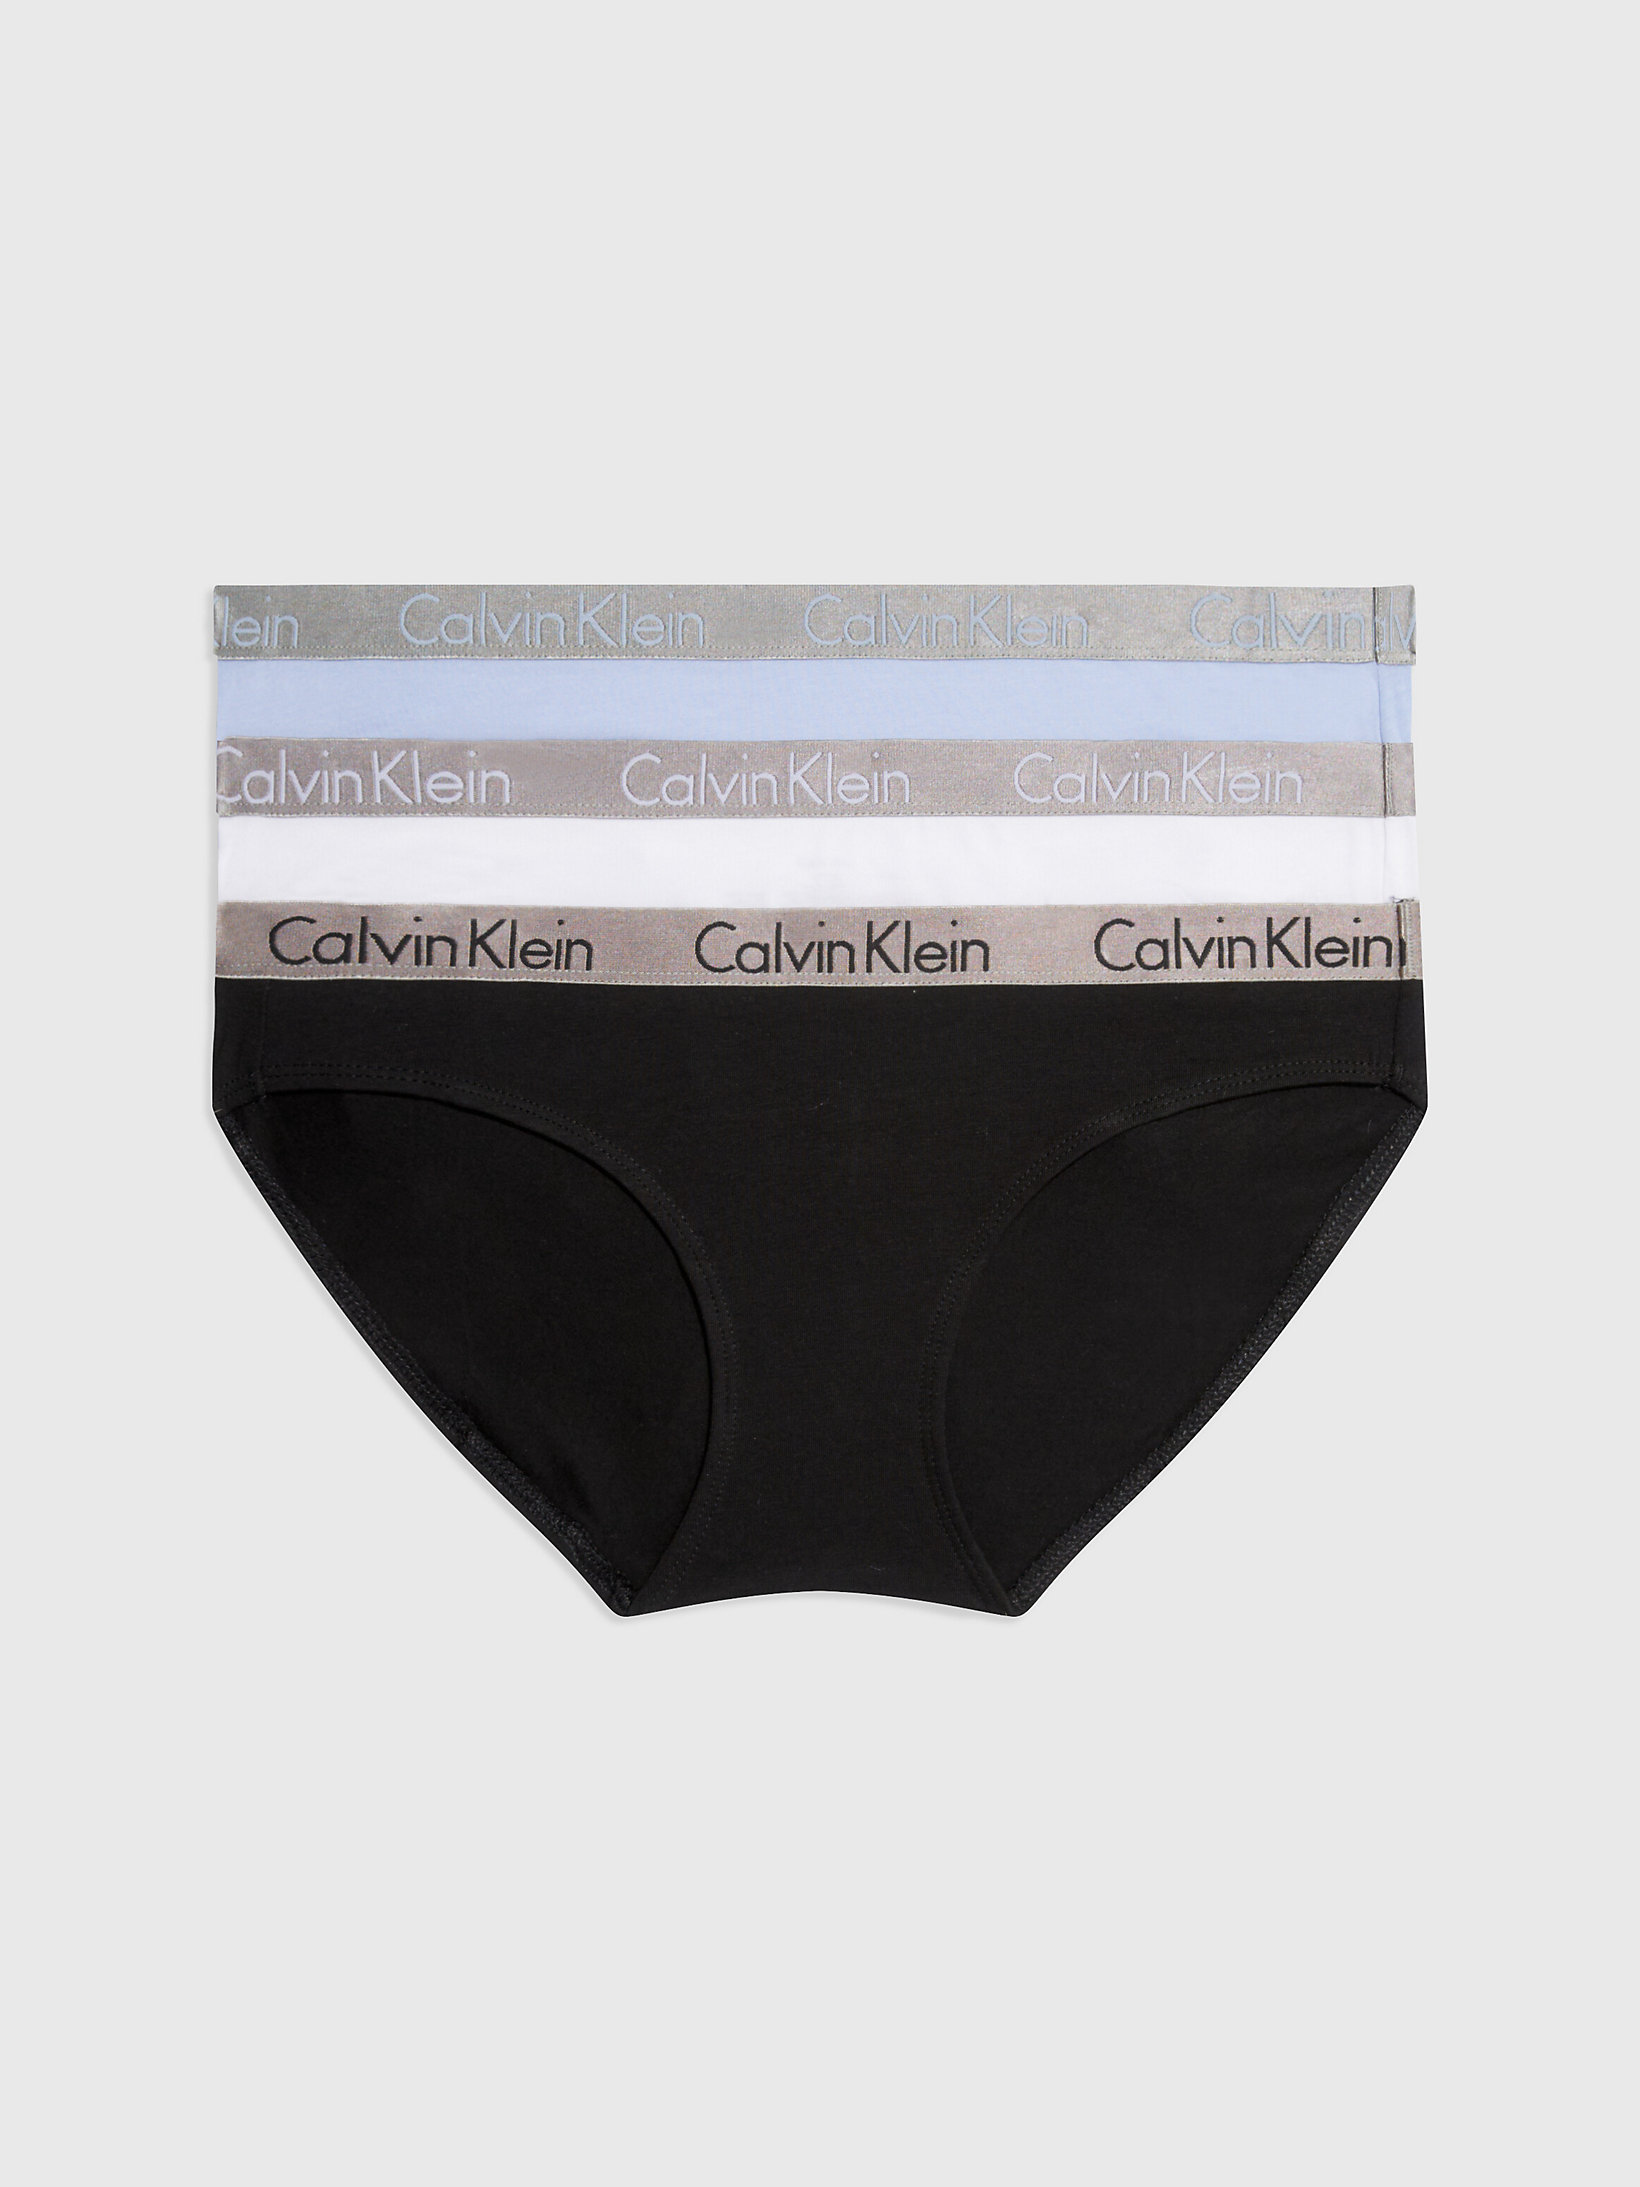 Black/white/prepster Blue 3 Pack Bikini Briefs - Radiant Cotton undefined women Calvin Klein